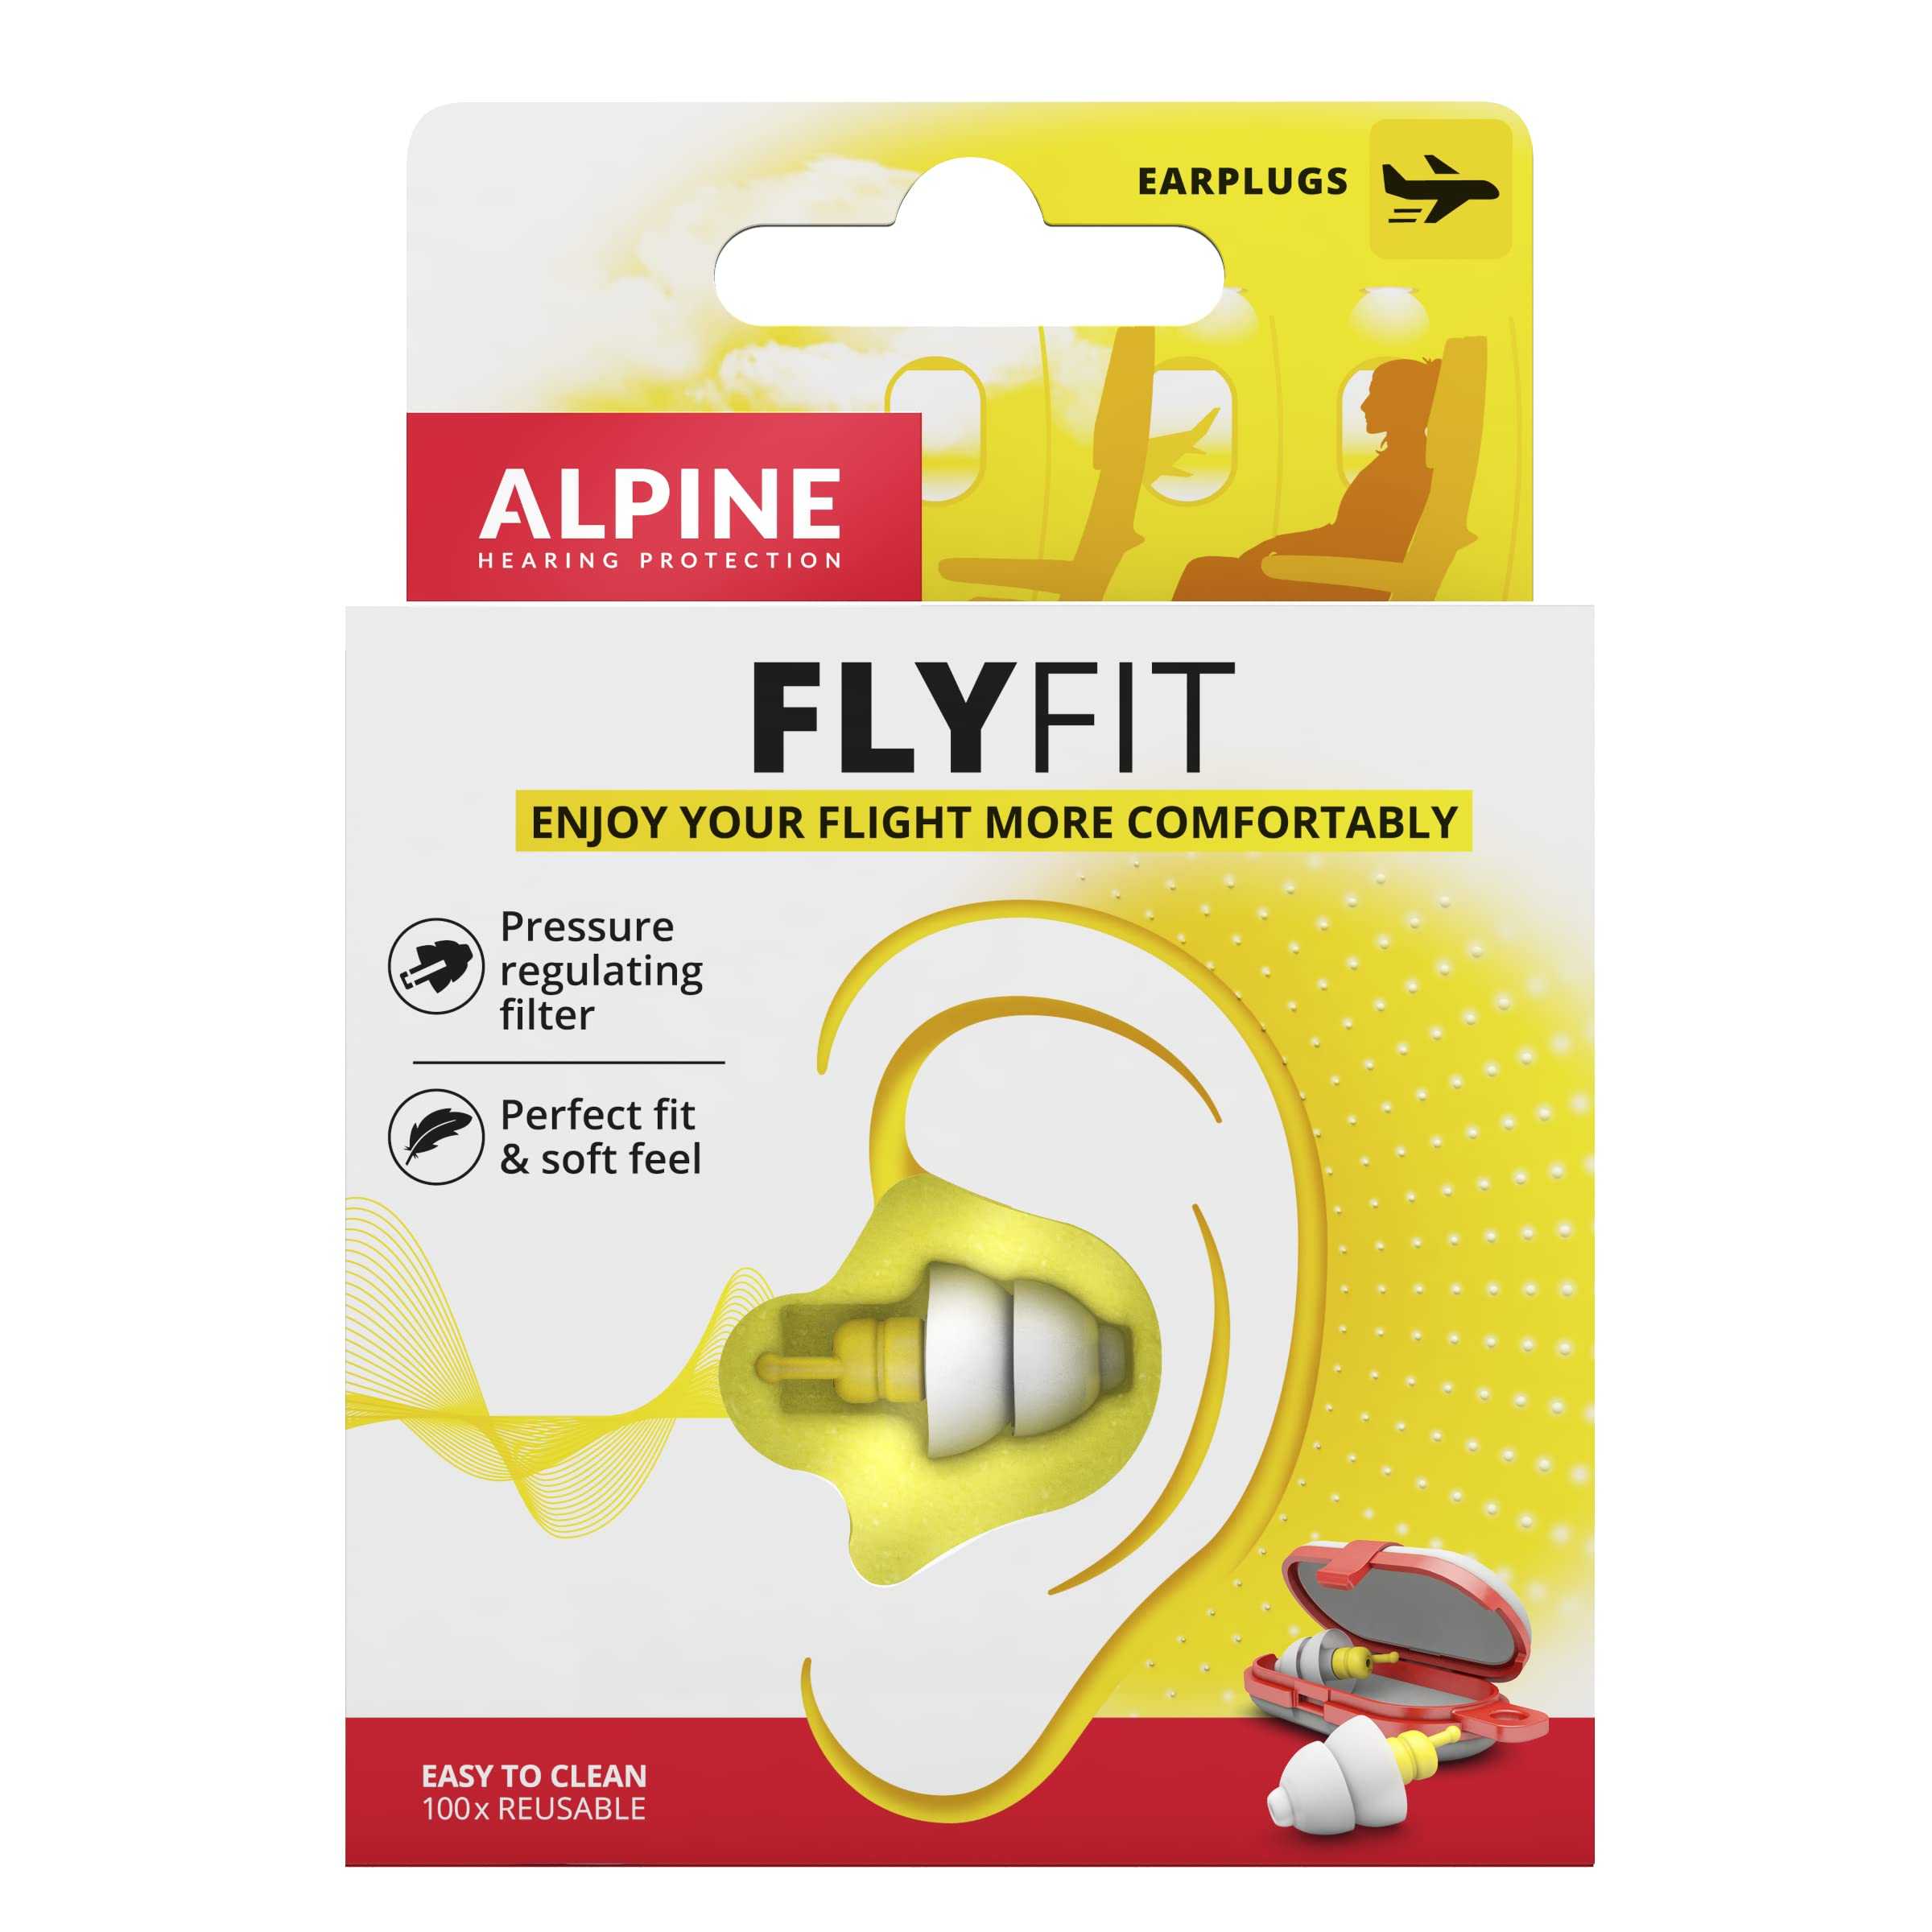 Alpine FlyFit - Earplugs for Pressure Relief